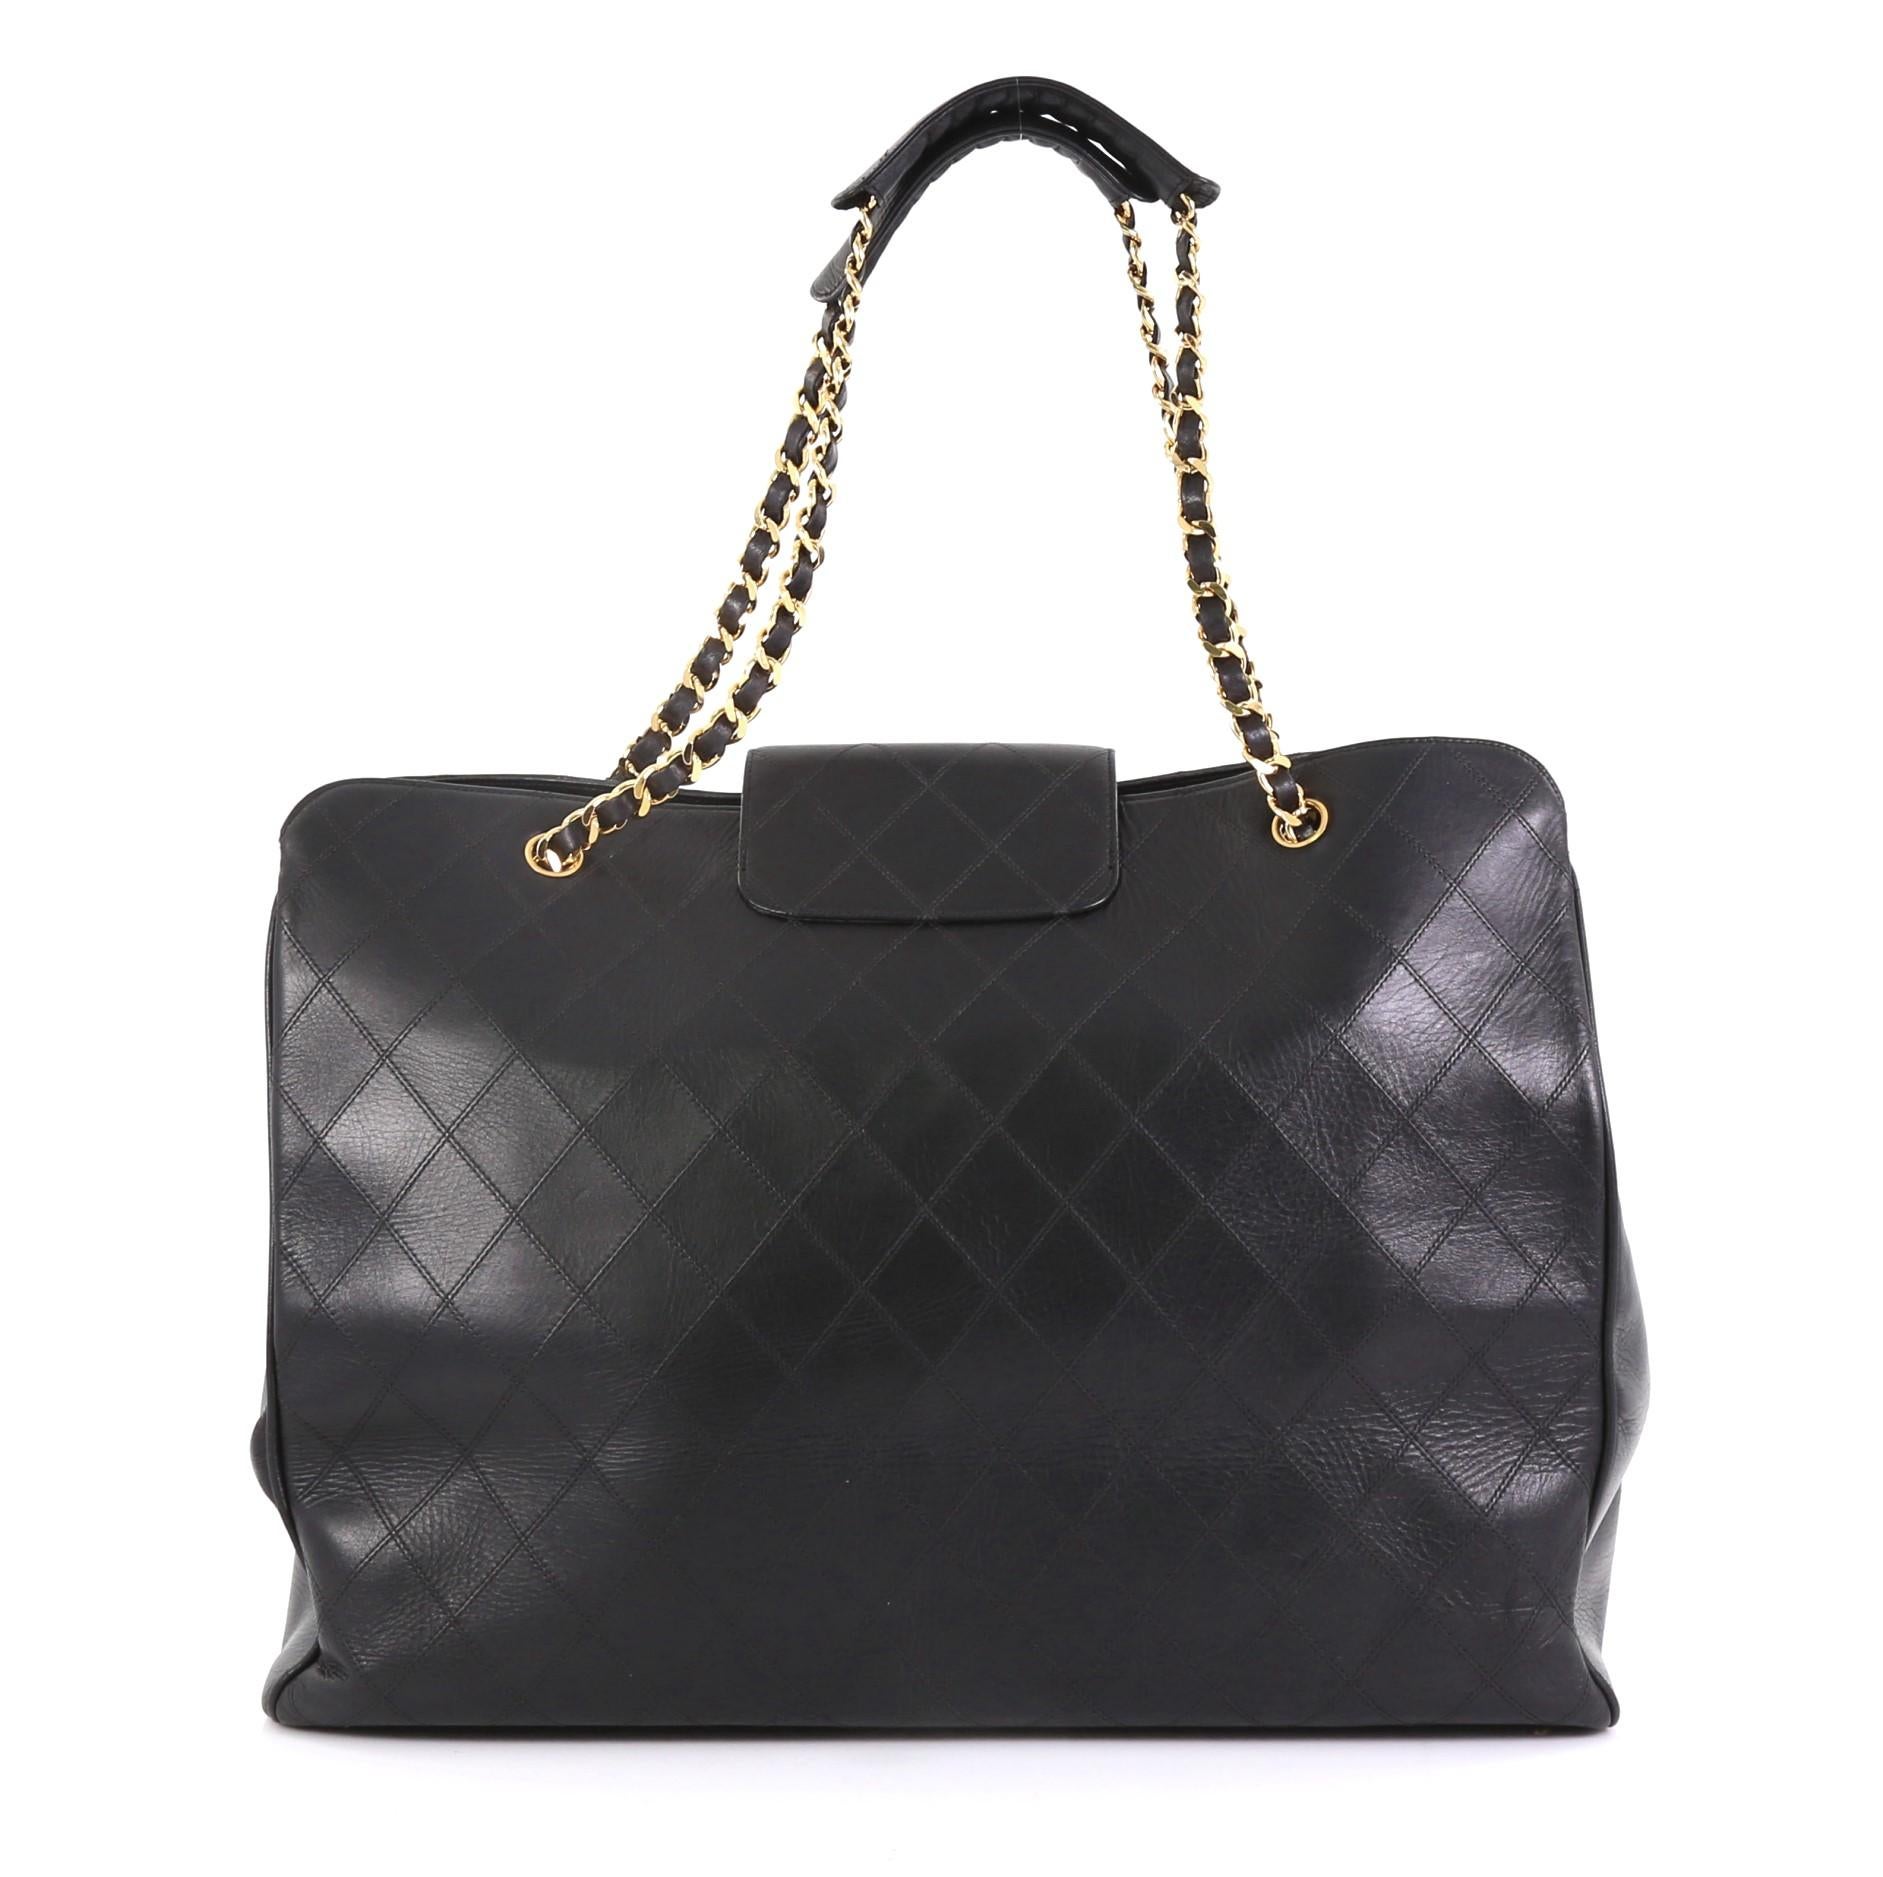 Black Chanel Vintage Supermodel Weekender Bag Quilted Leather Large